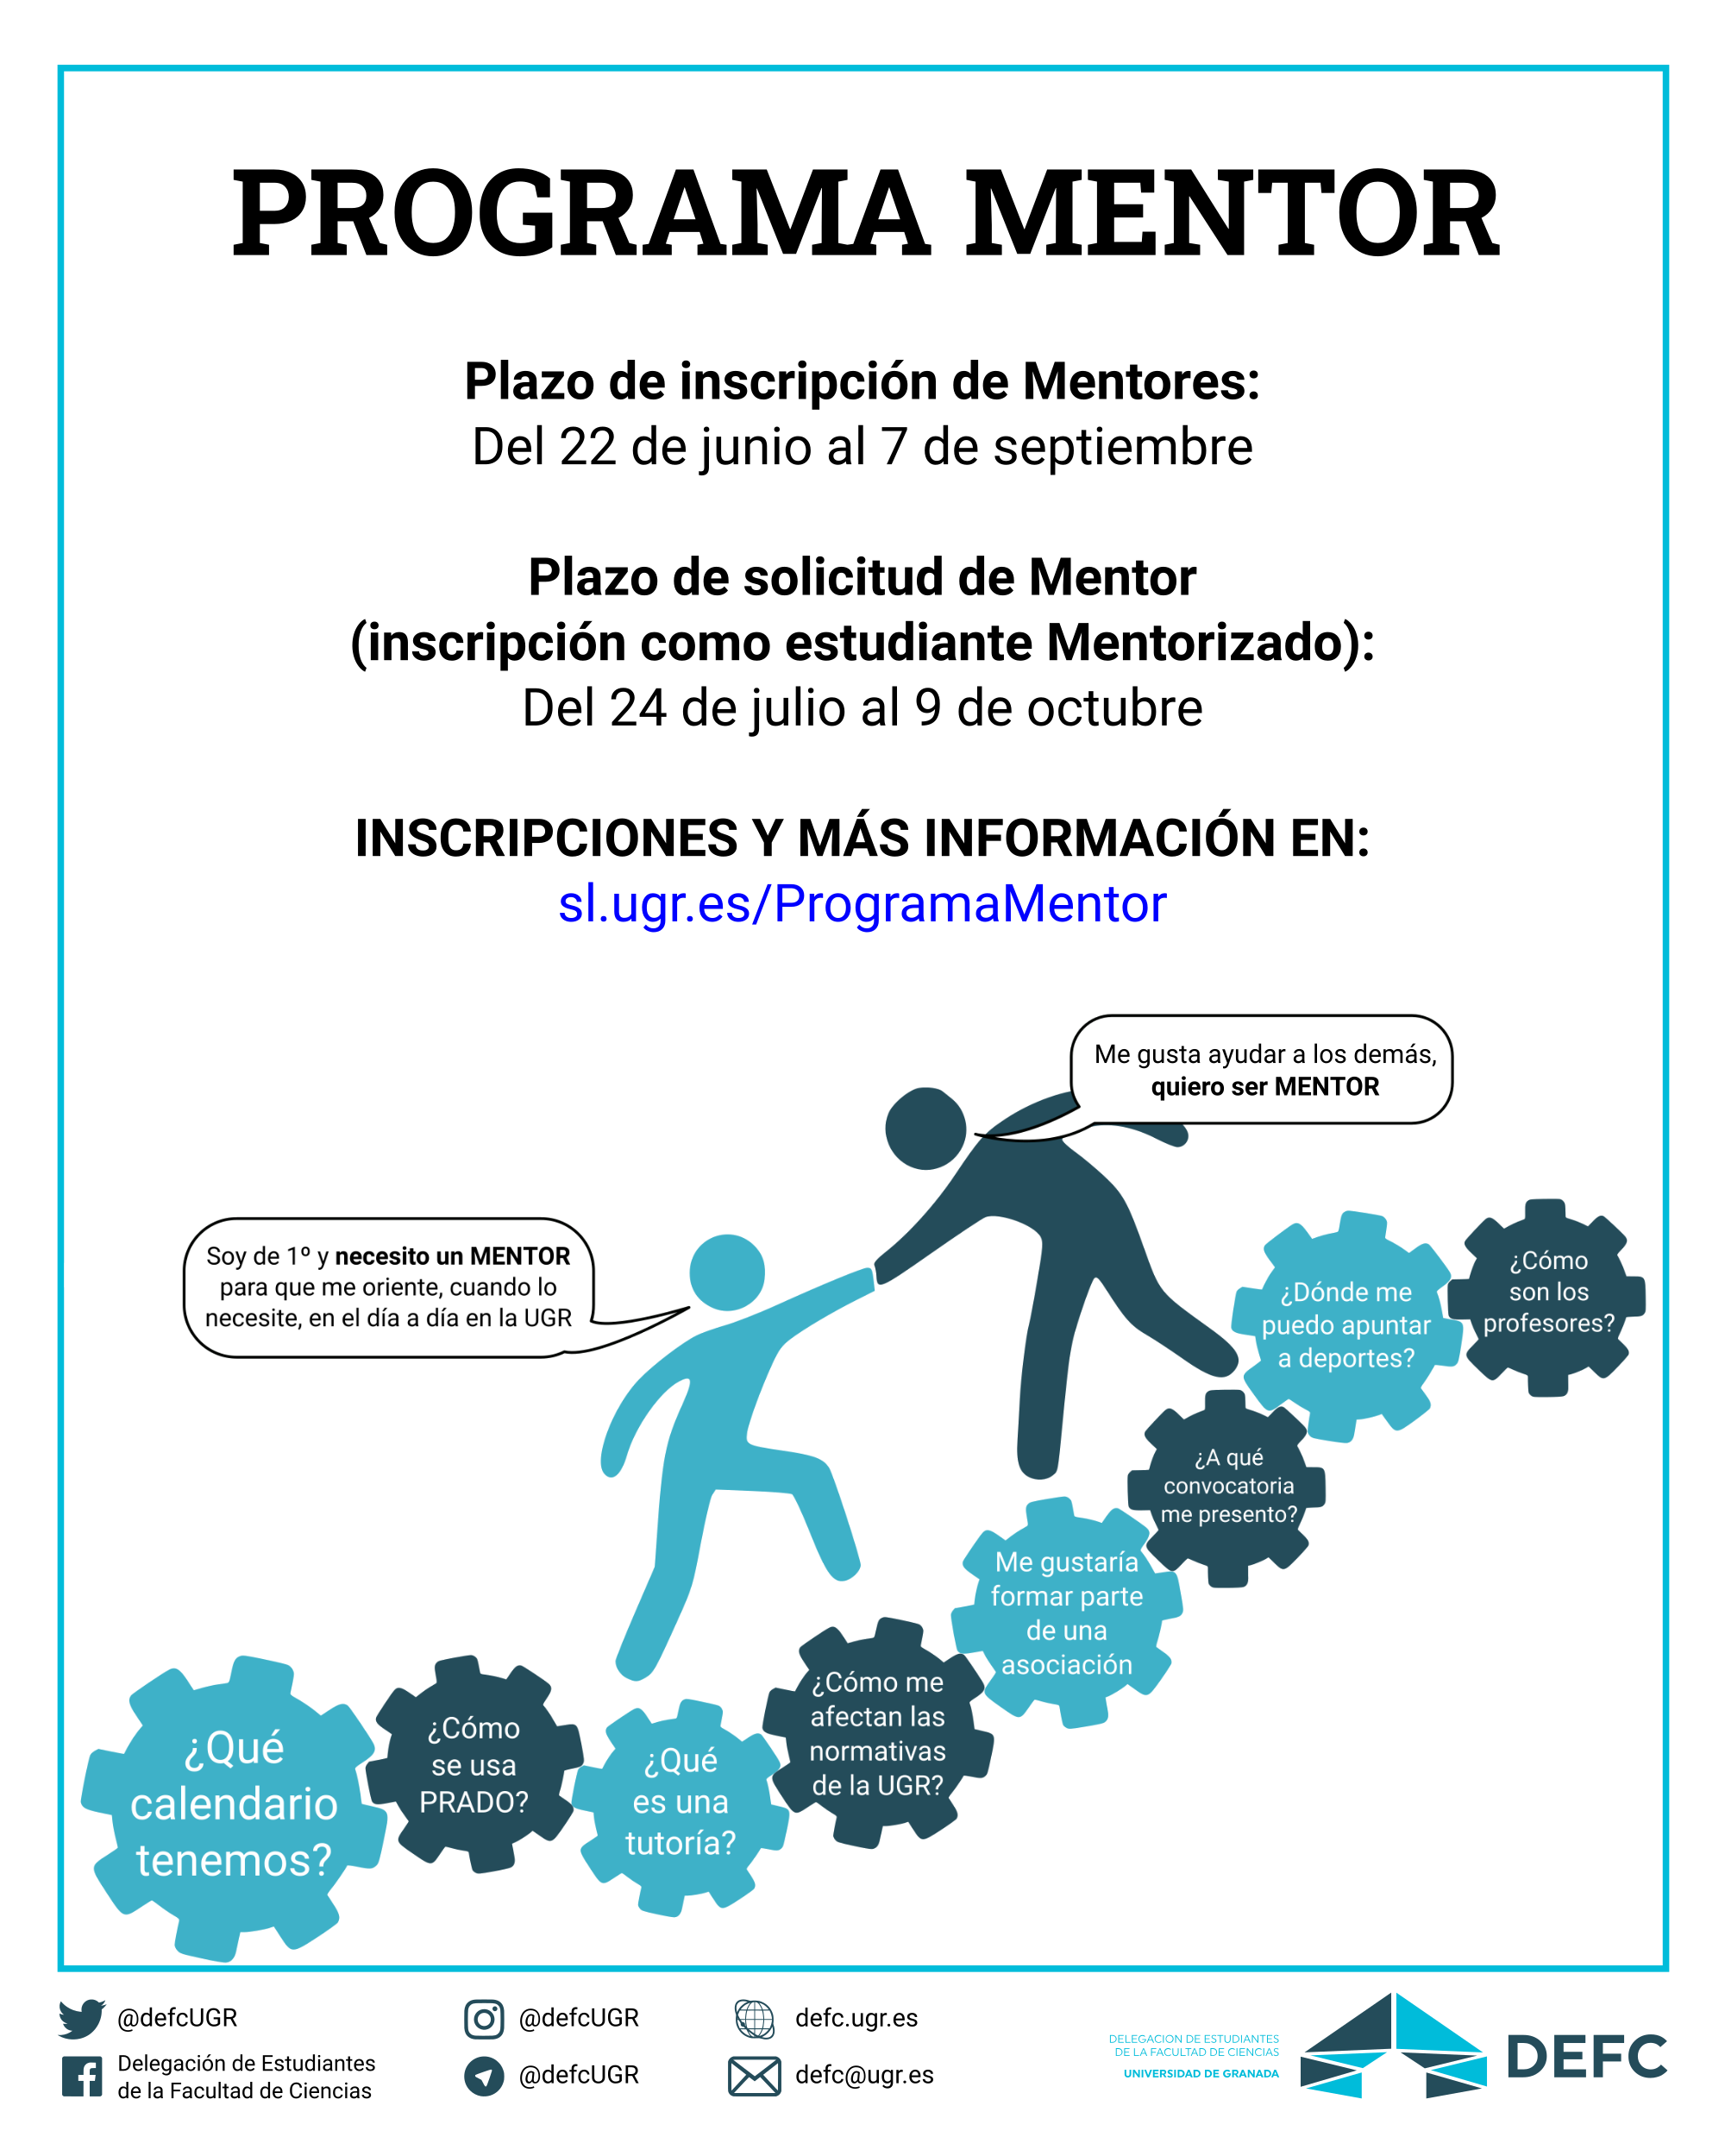 Programa Mentor 2020/21